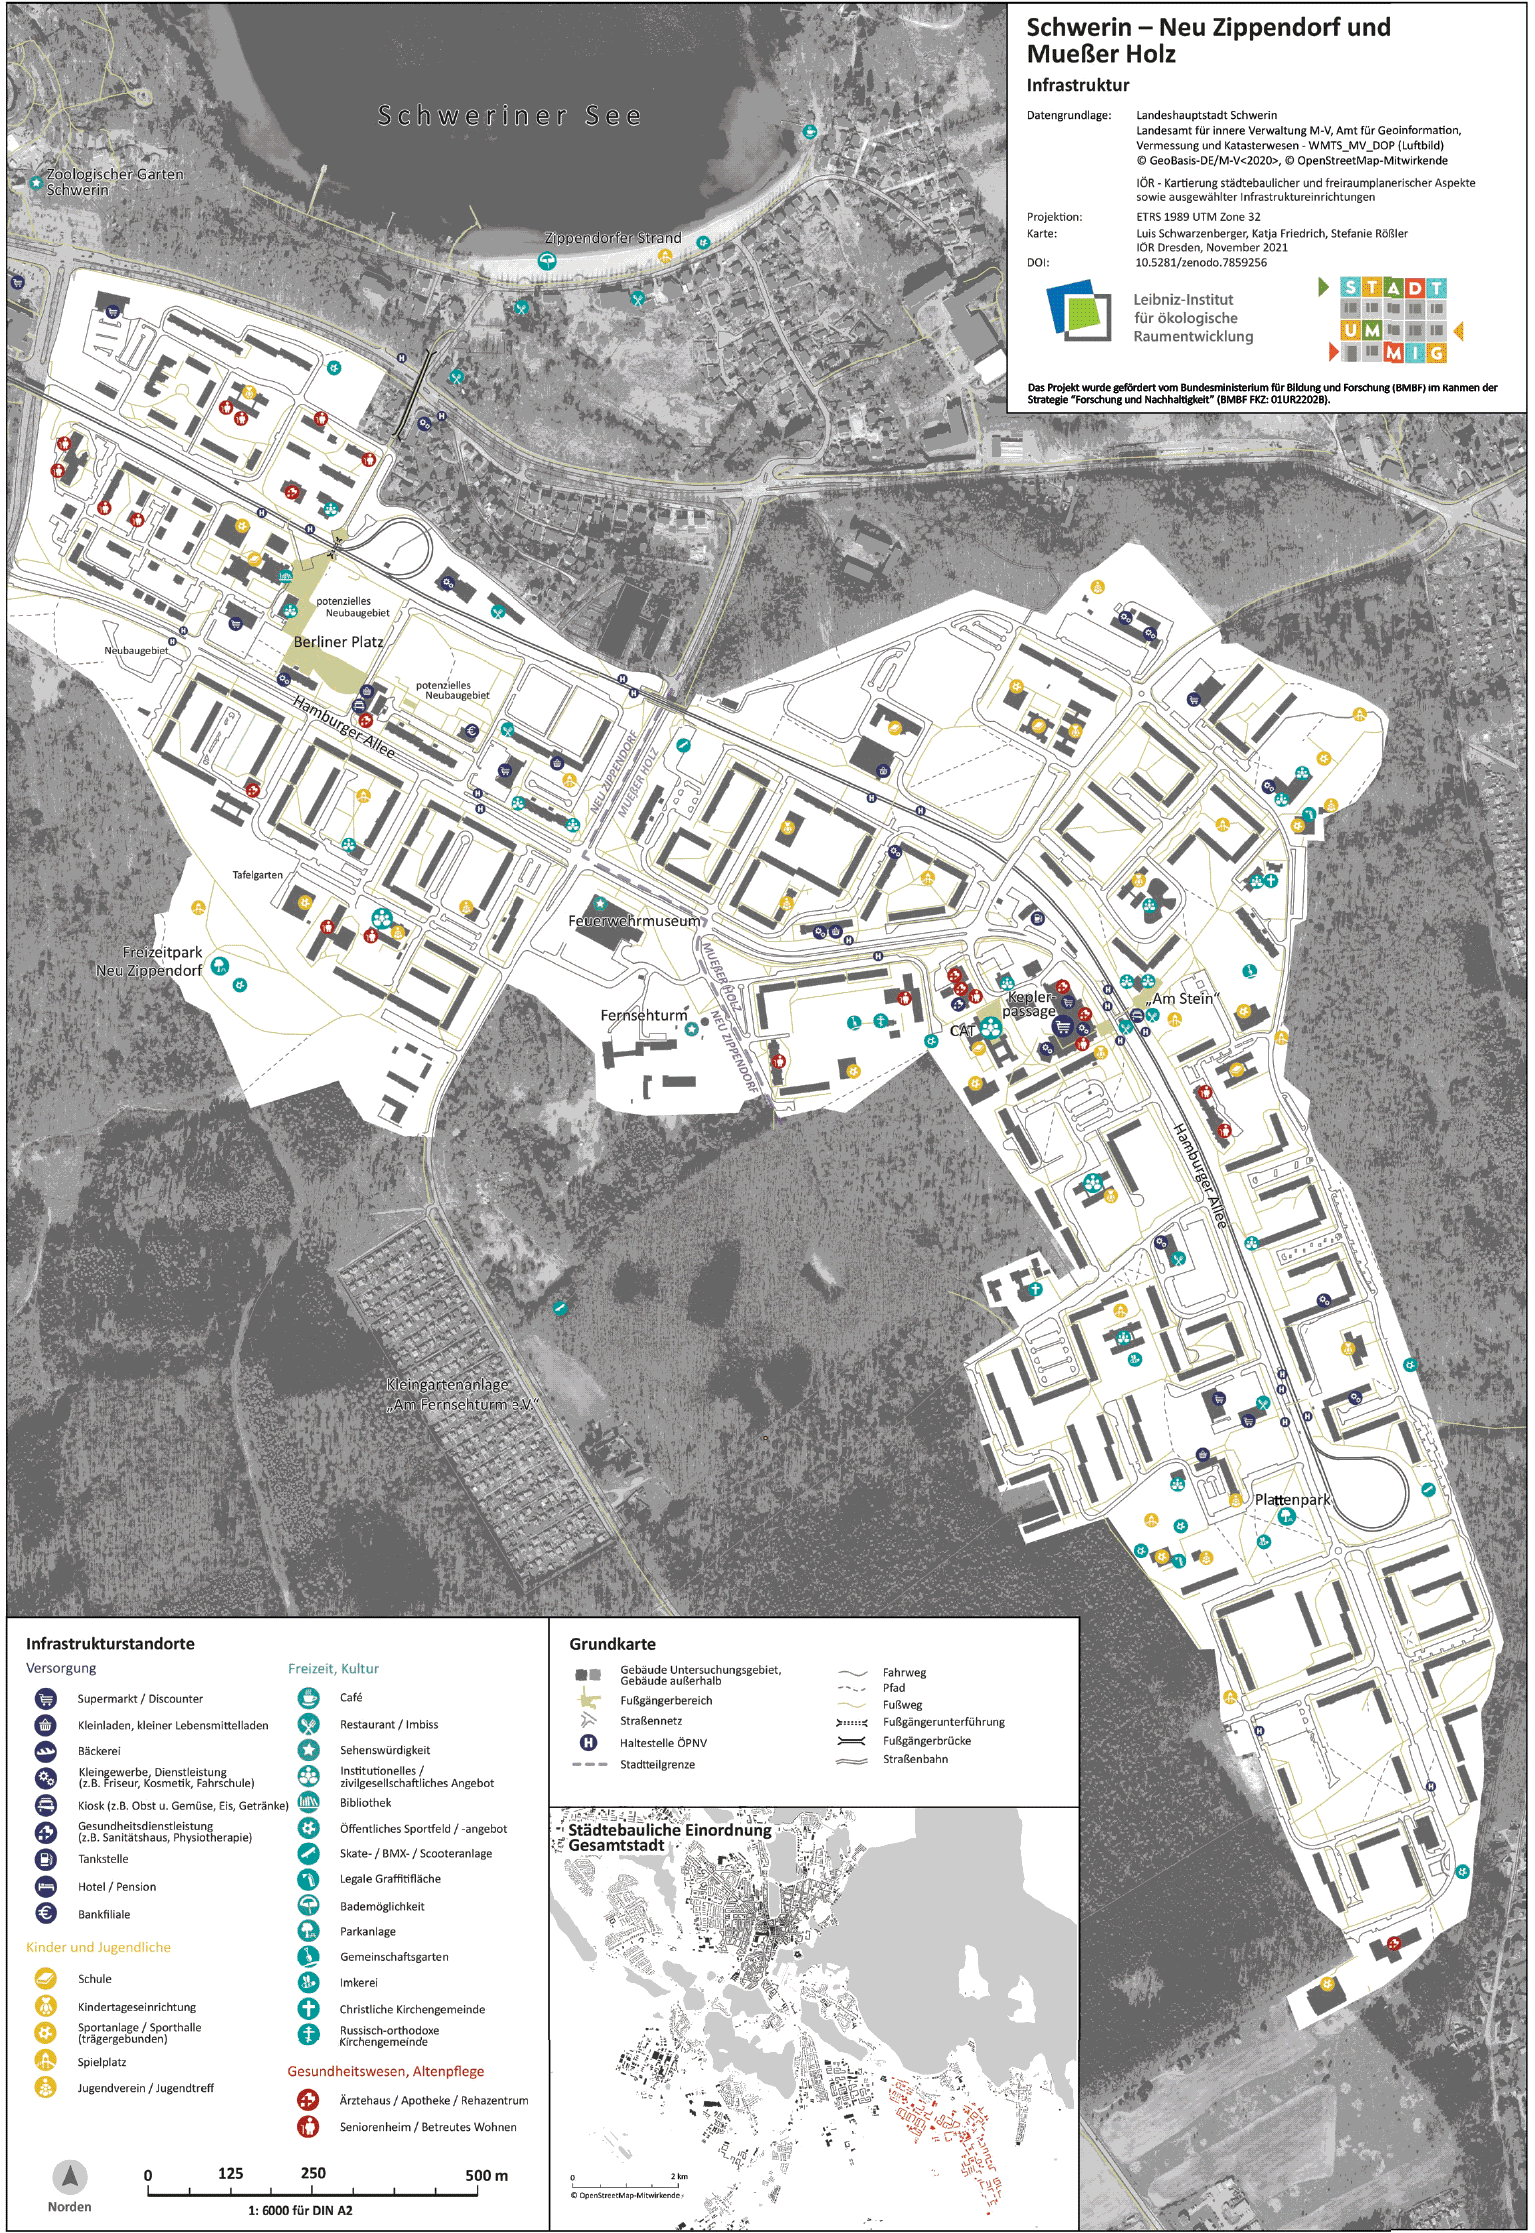 Abb. 1 Infrastrukturkarte der Schweriner
					Stadtteile Neu-Zippendorf und Mueßer Holz (südlich der Strichlinie) (Quelle: Friedrich/Rößler
					2023a).